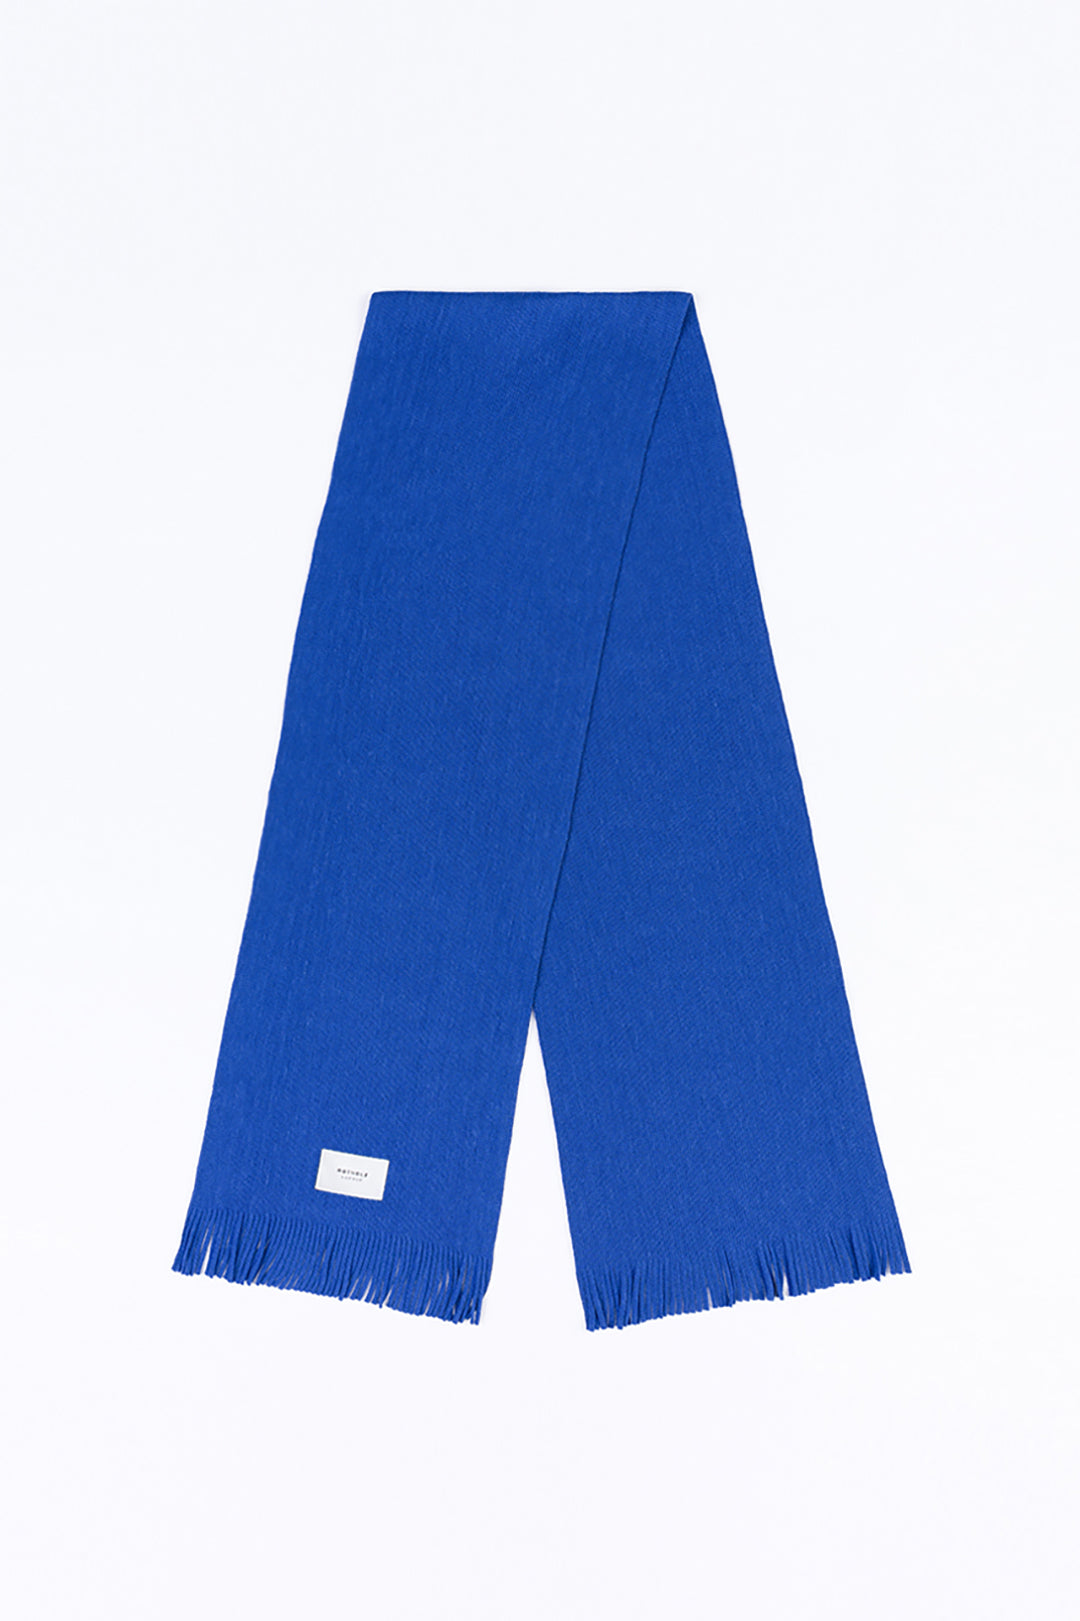 Merino wool scarf - cobalt blue - Made in Germany